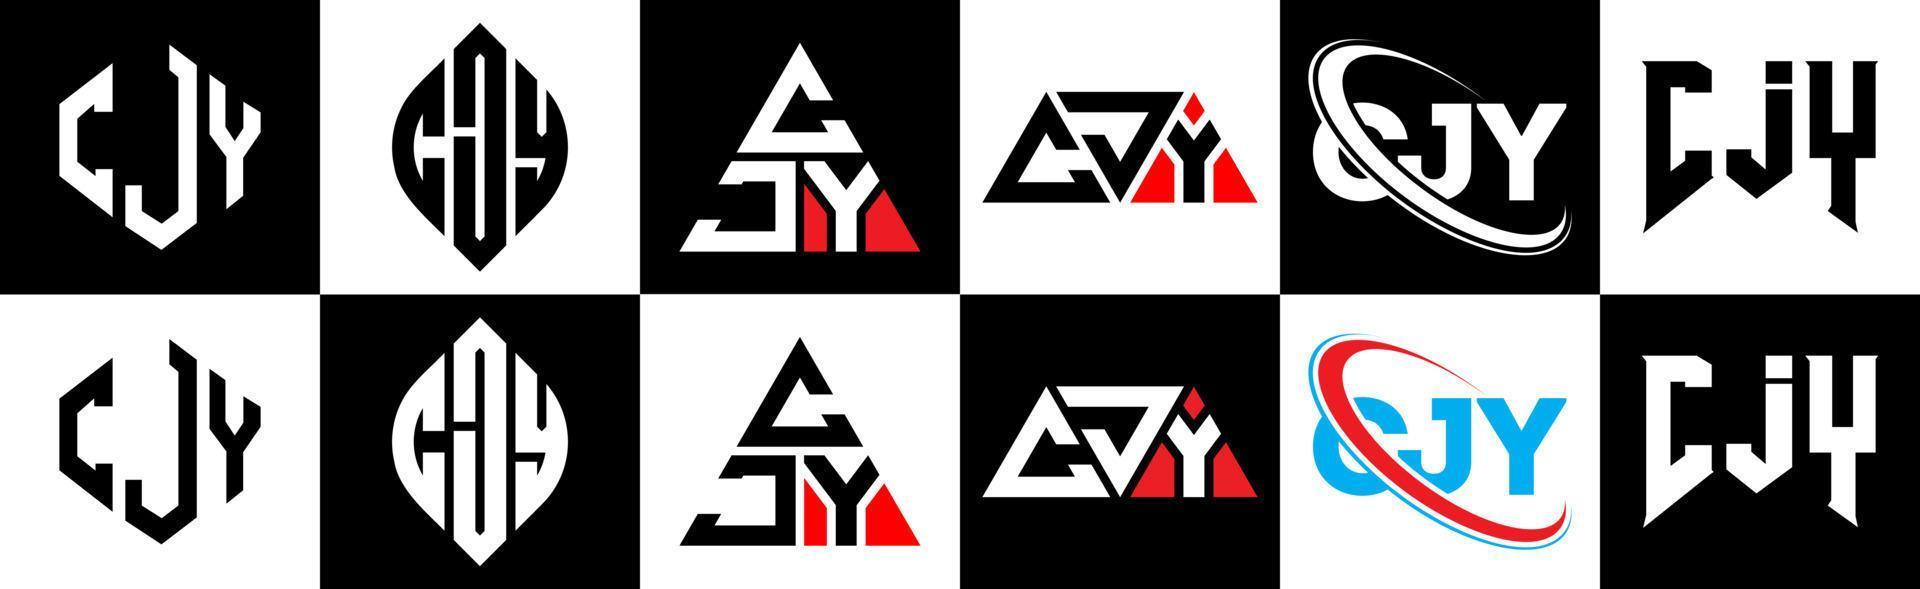 cjy-Buchstaben-Logo-Design in sechs Stilen. cjy polygon, kreis, dreieck, sechseck, flacher und einfacher stil mit schwarz-weißem buchstabenlogo in einer zeichenfläche. cjy minimalistisches und klassisches Logo vektor